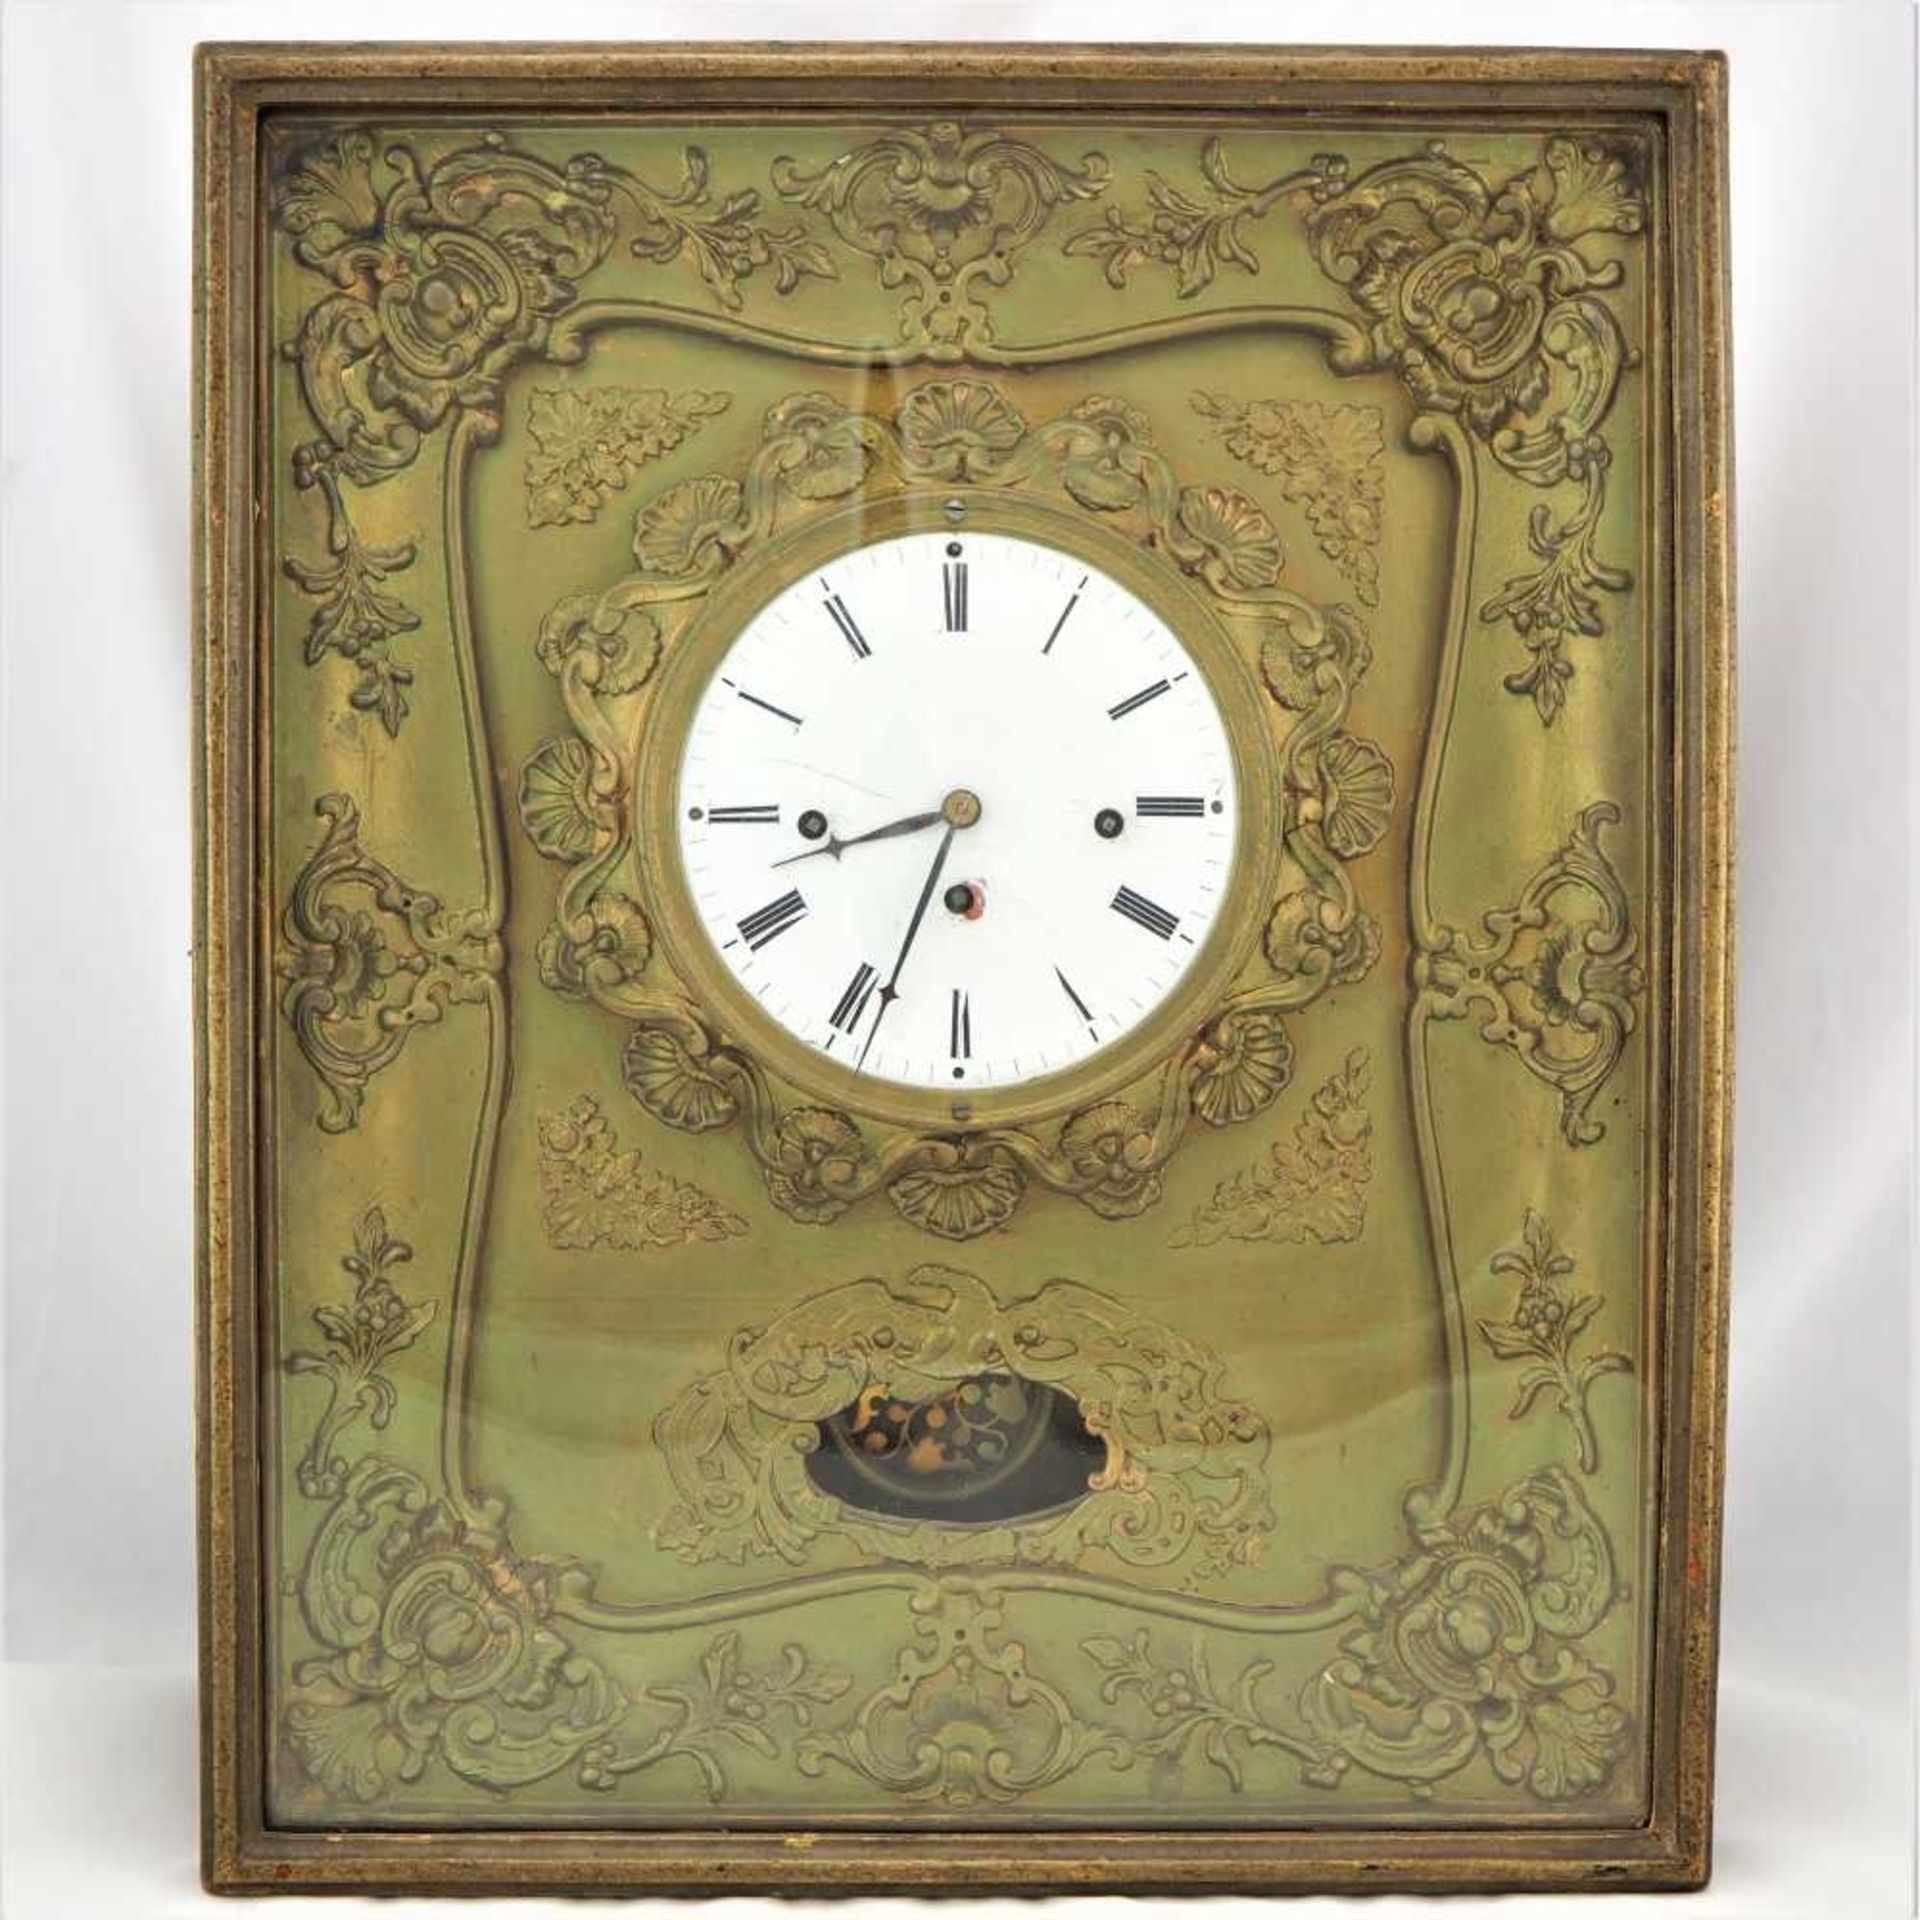 Wiener Rahmenuhr, um 1830Goldfarbener Uhrenkasten mit reichlicher Verzierung. Werk mit W